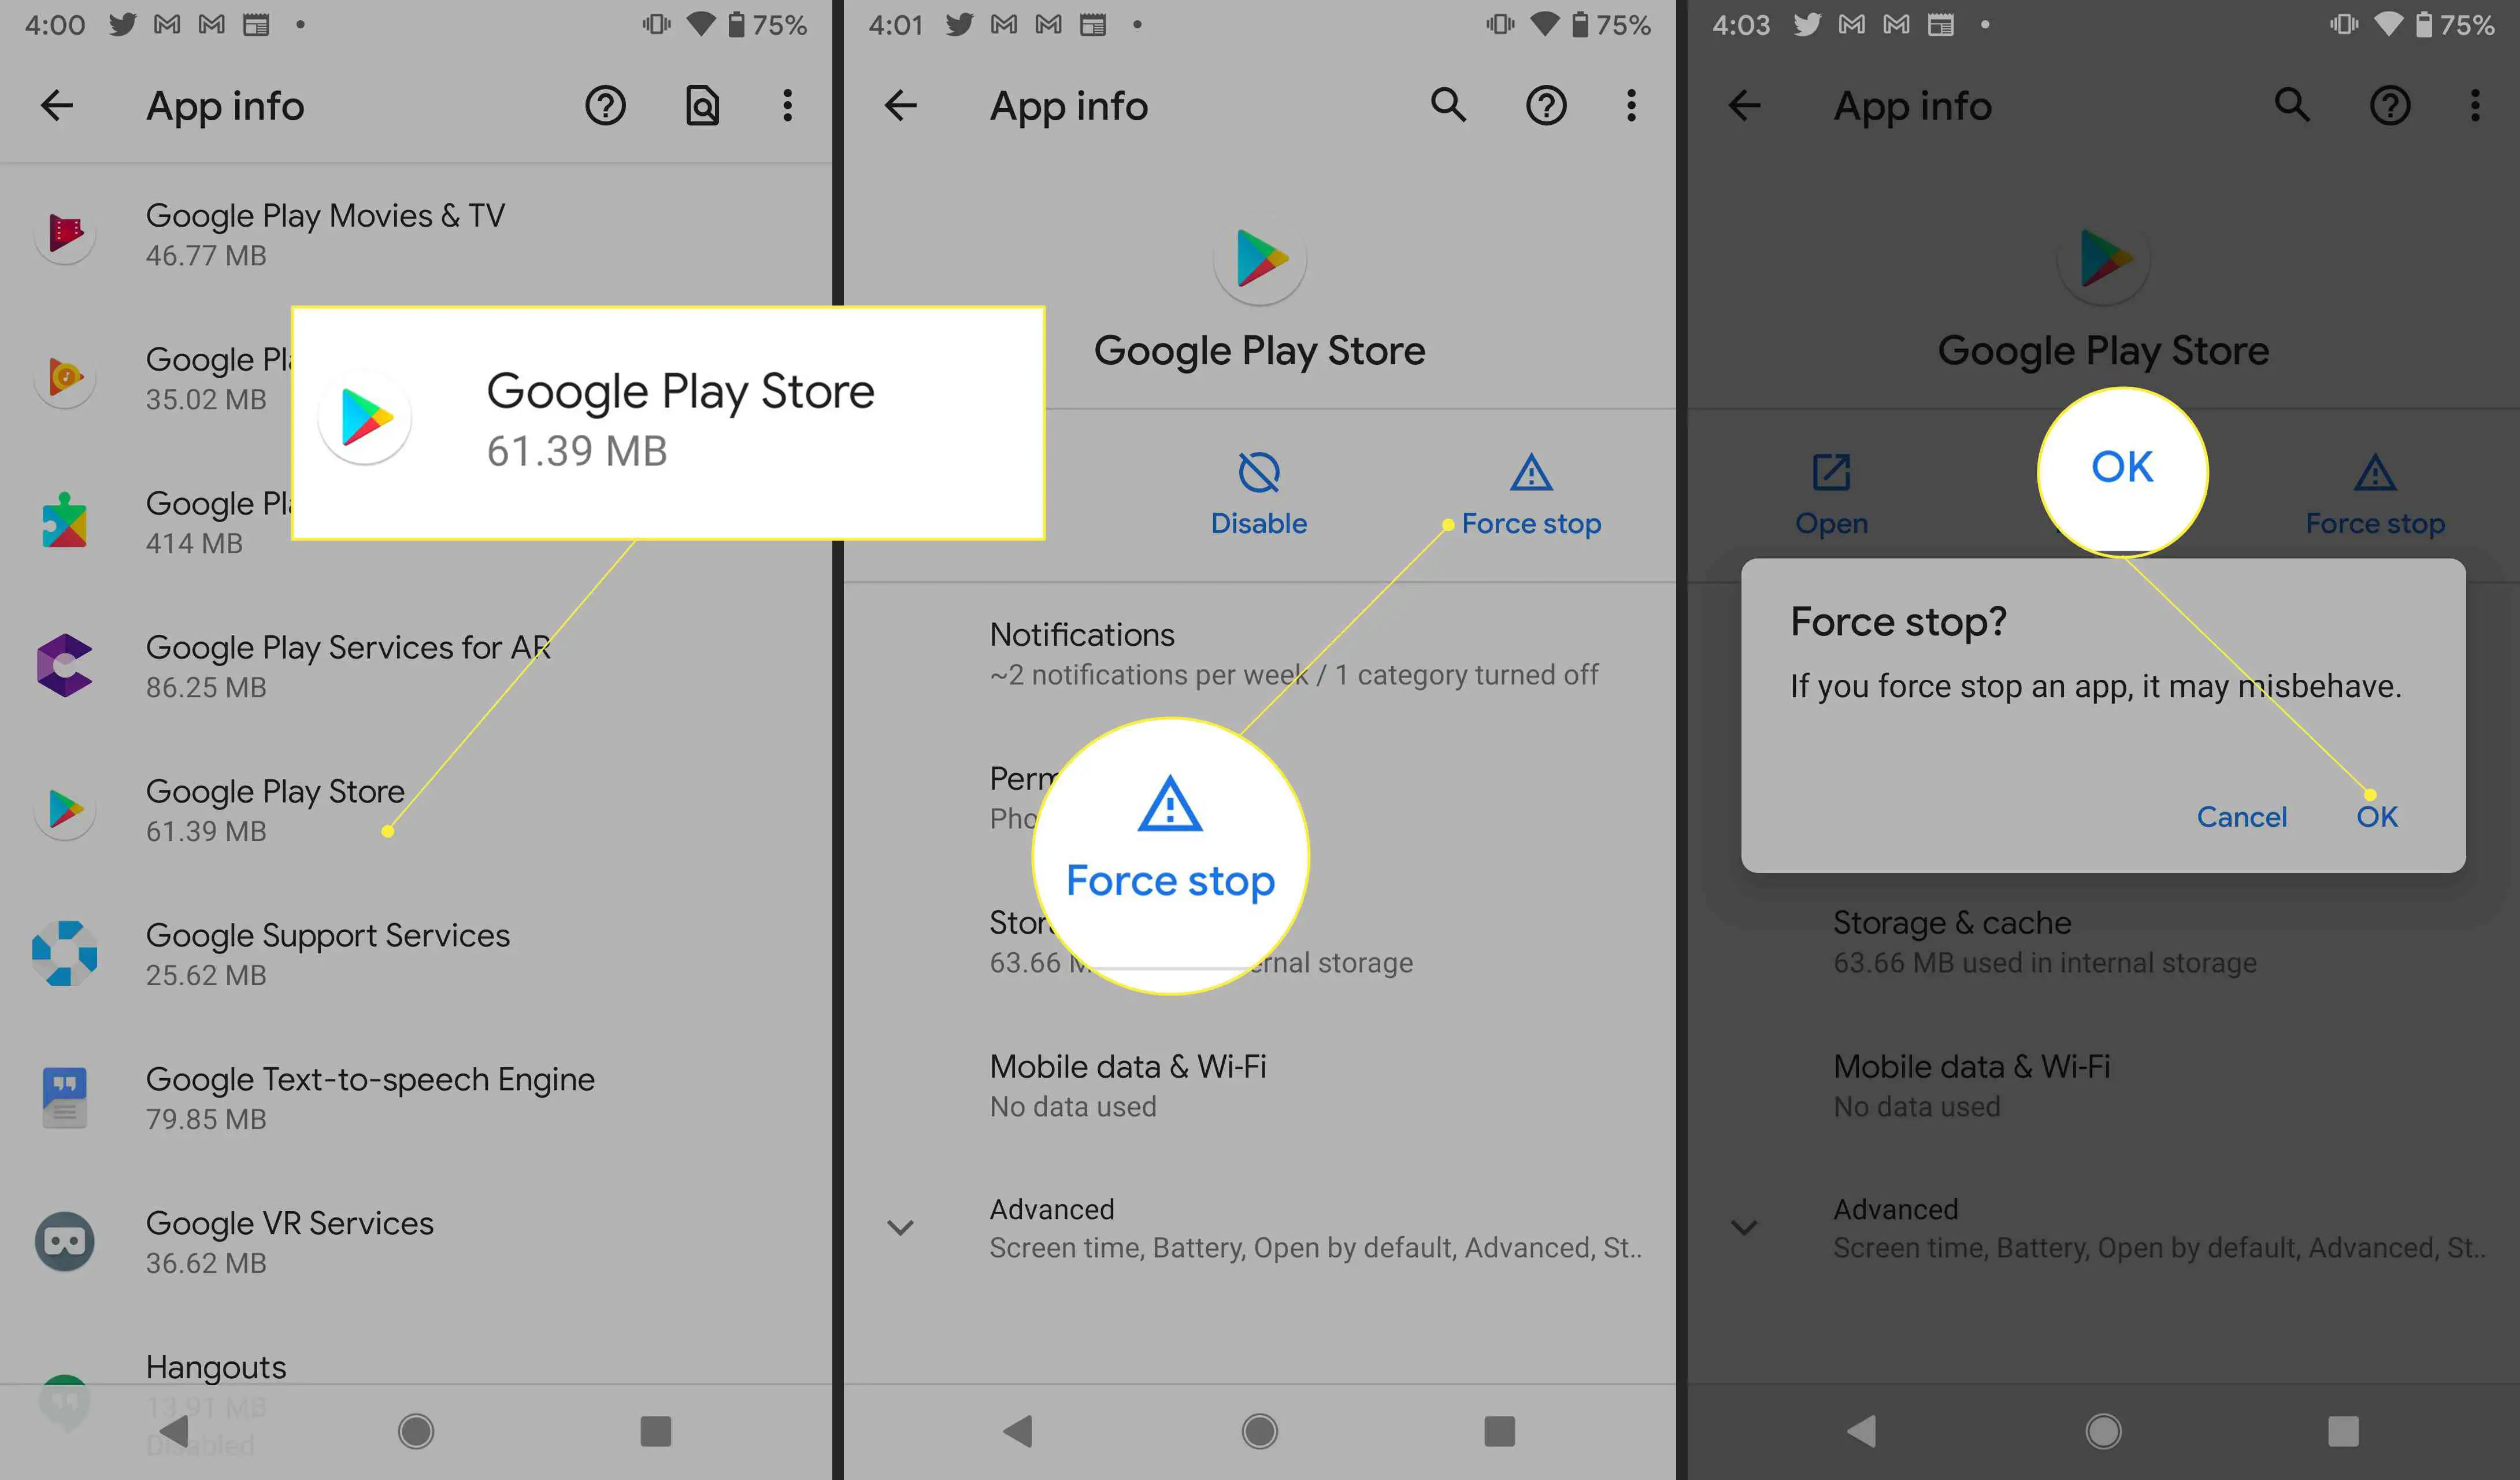 Configurações do Google Play com Forçar parada e OK destacados